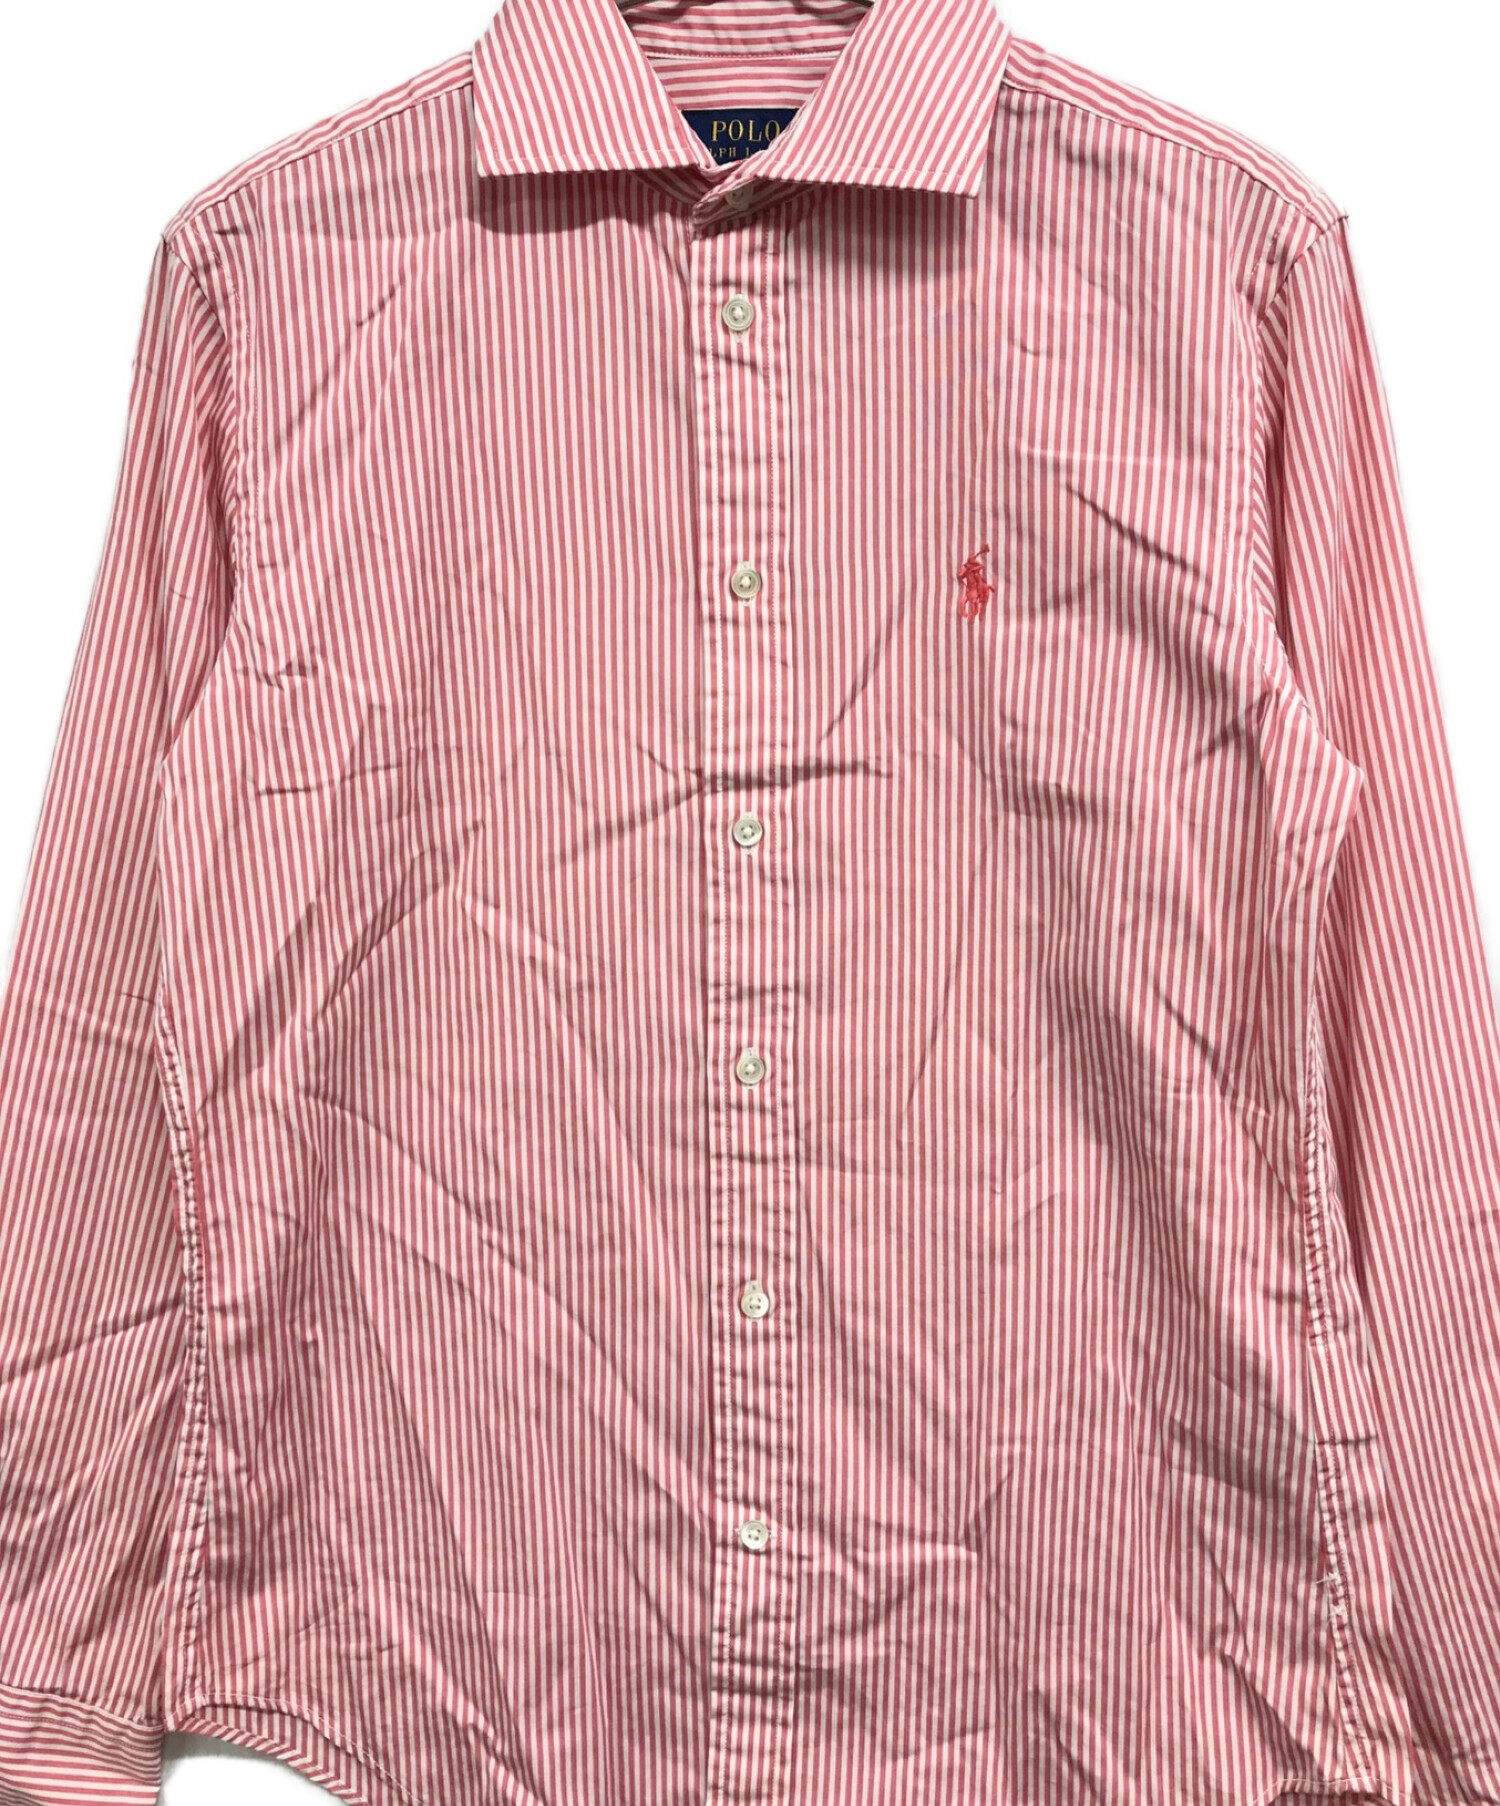 POLO RALPH LAUREN (ポロ・ラルフローレン) ストライプシャツ ピンク×ホワイト サイズ:2